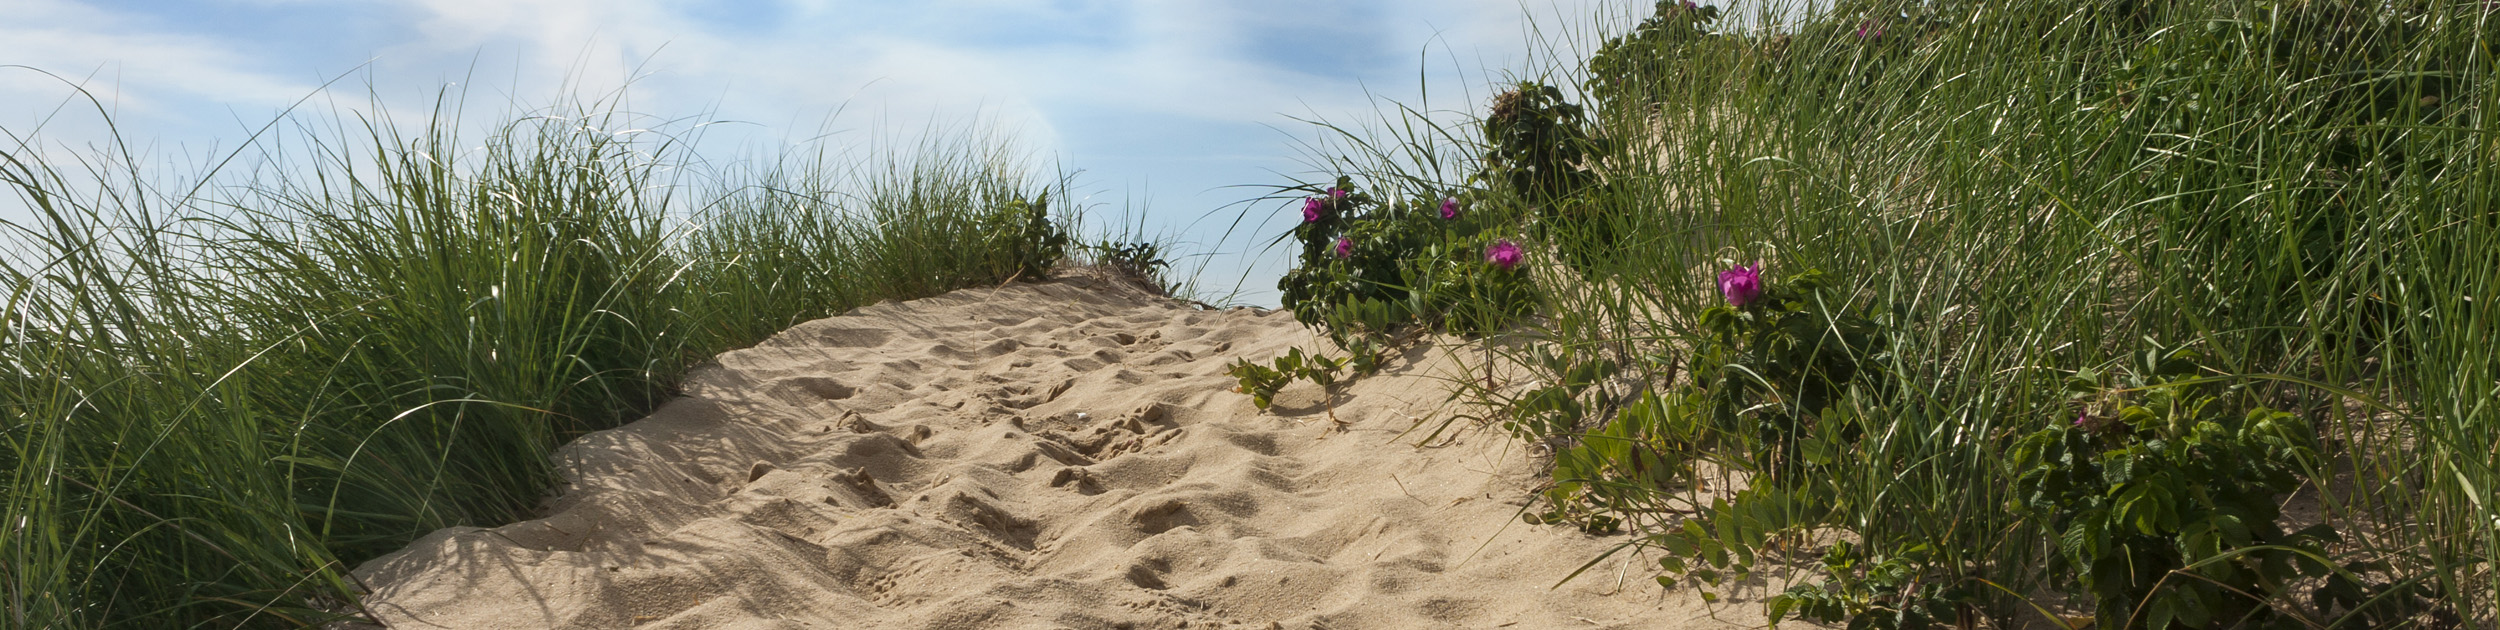 sandy beach path with beach grass on each side